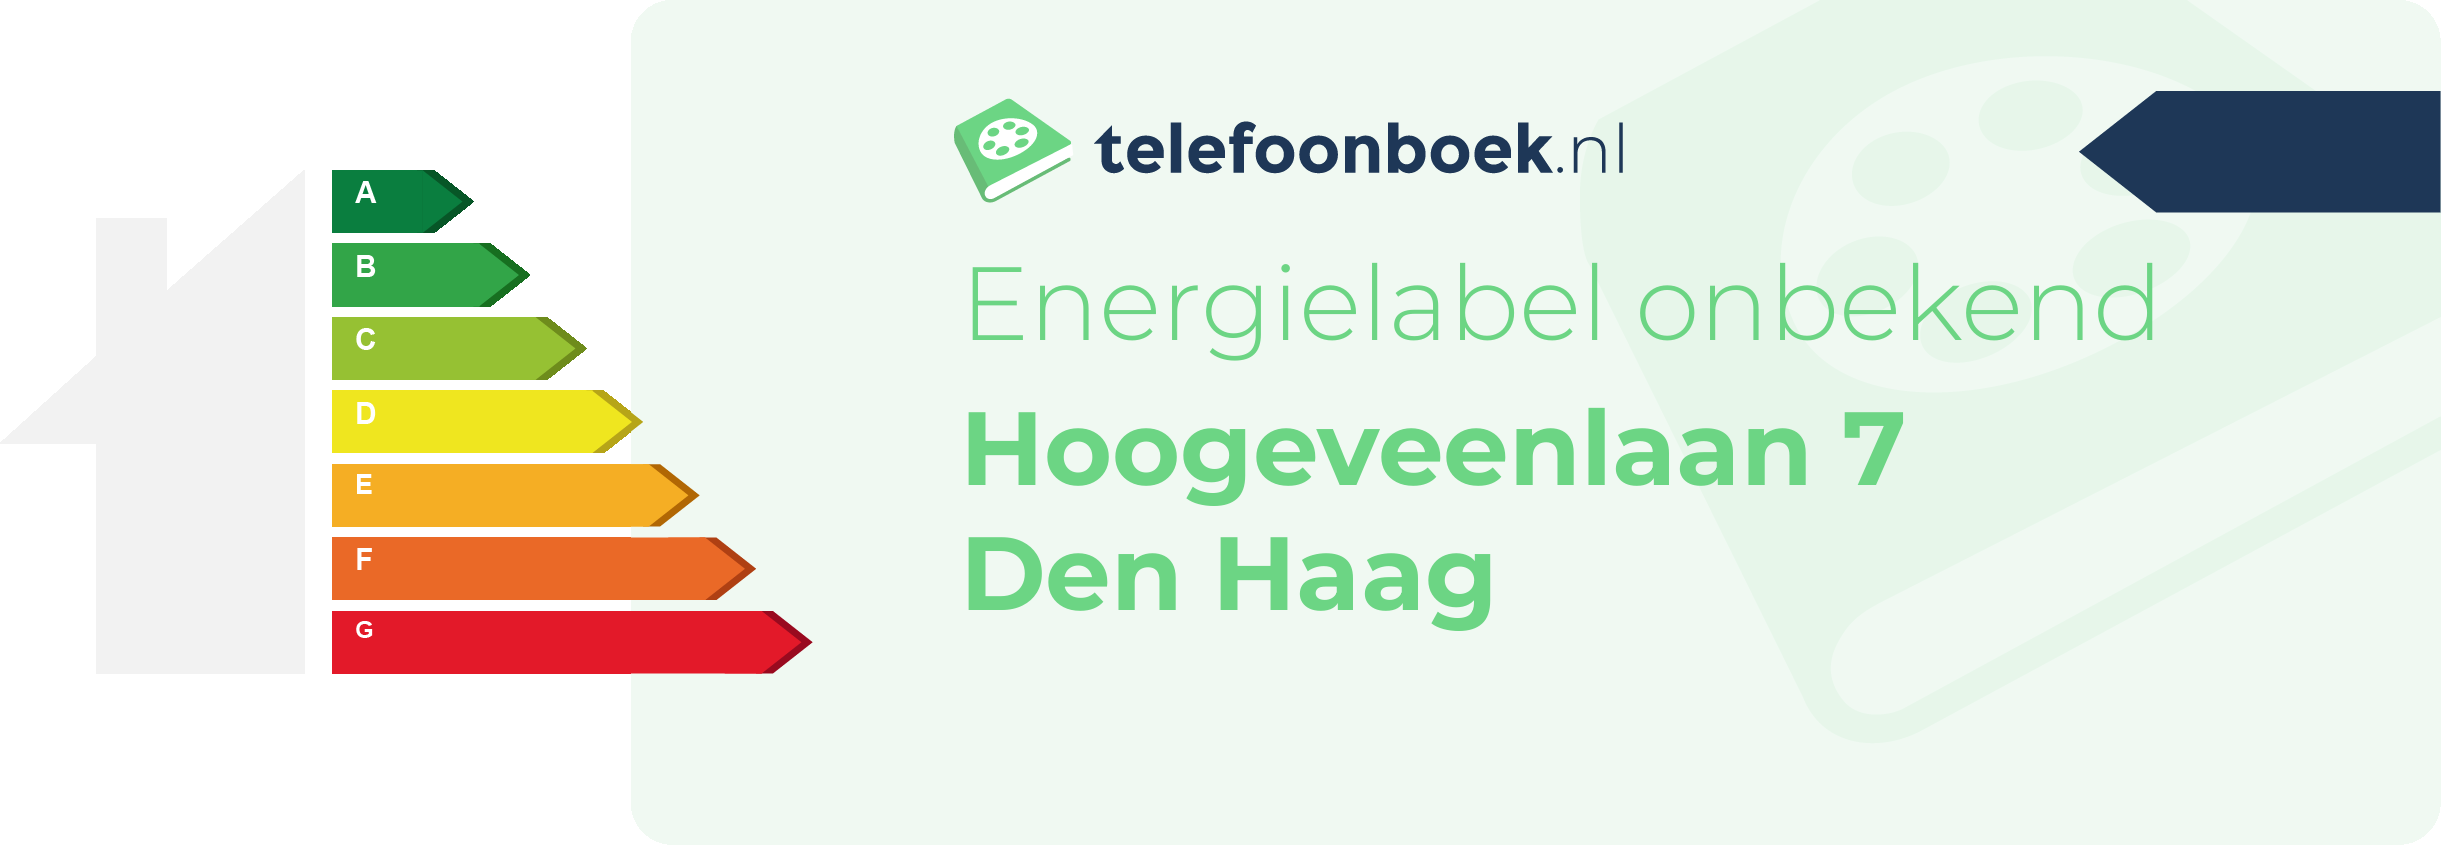 Energielabel Hoogeveenlaan 7 Den Haag